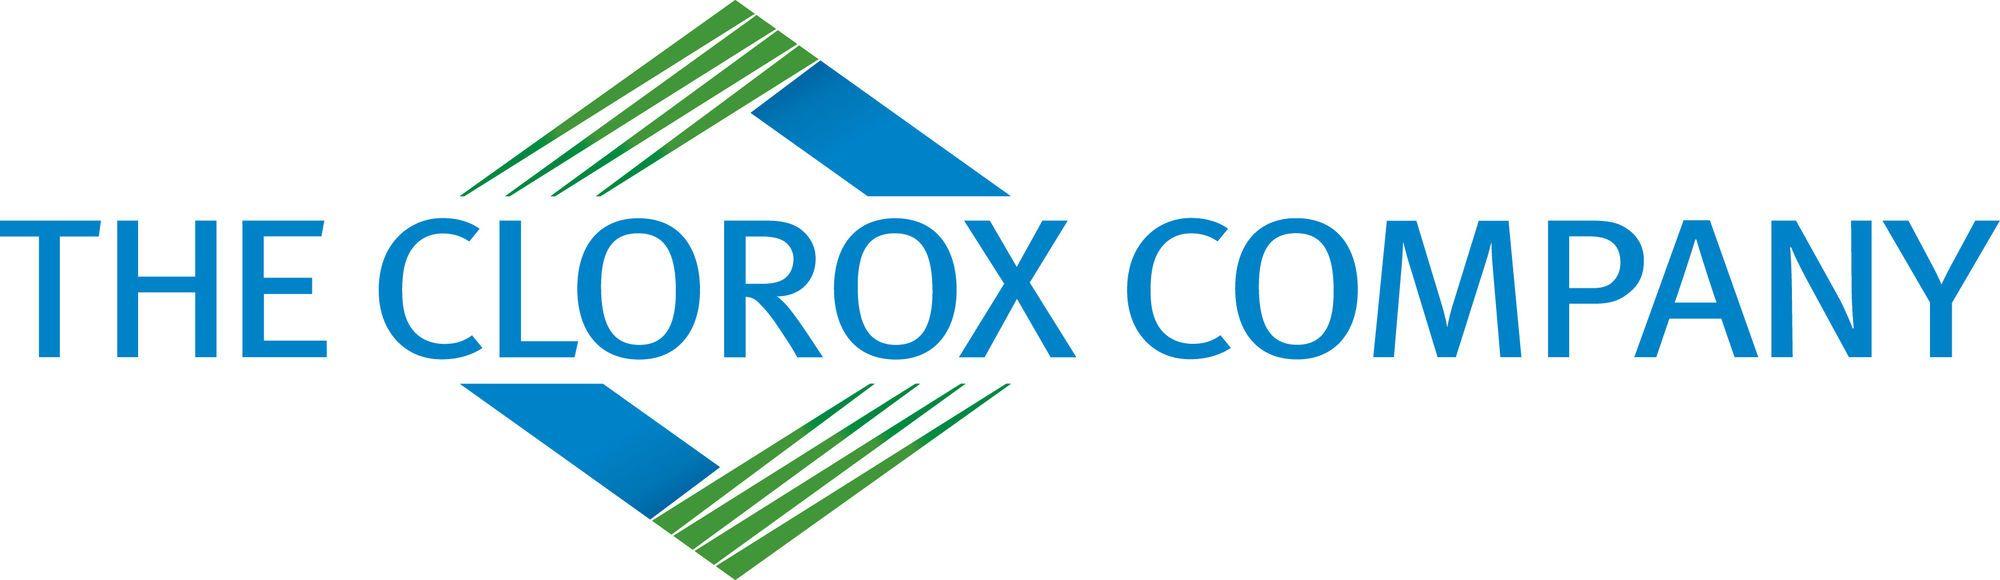 Clorox Logo - Clorox | Logopedia | FANDOM powered by Wikia